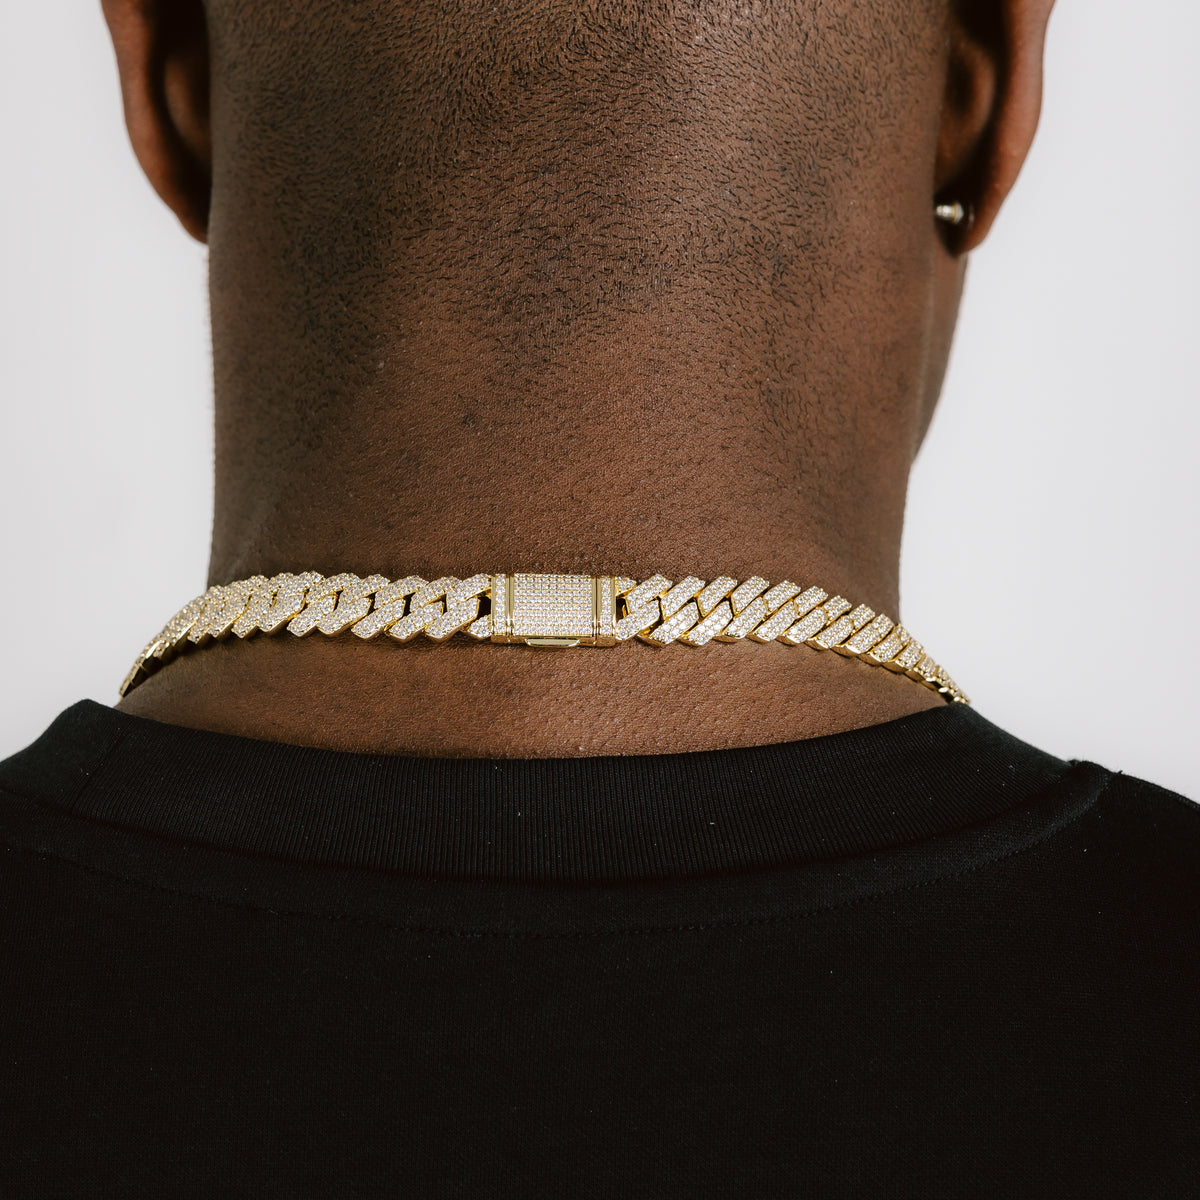 Gold Bracelet For Men - Made Of Stainless Steel - Gold Chain Bracelet For  Men - Gold wrap-around Bracelet 14.5”